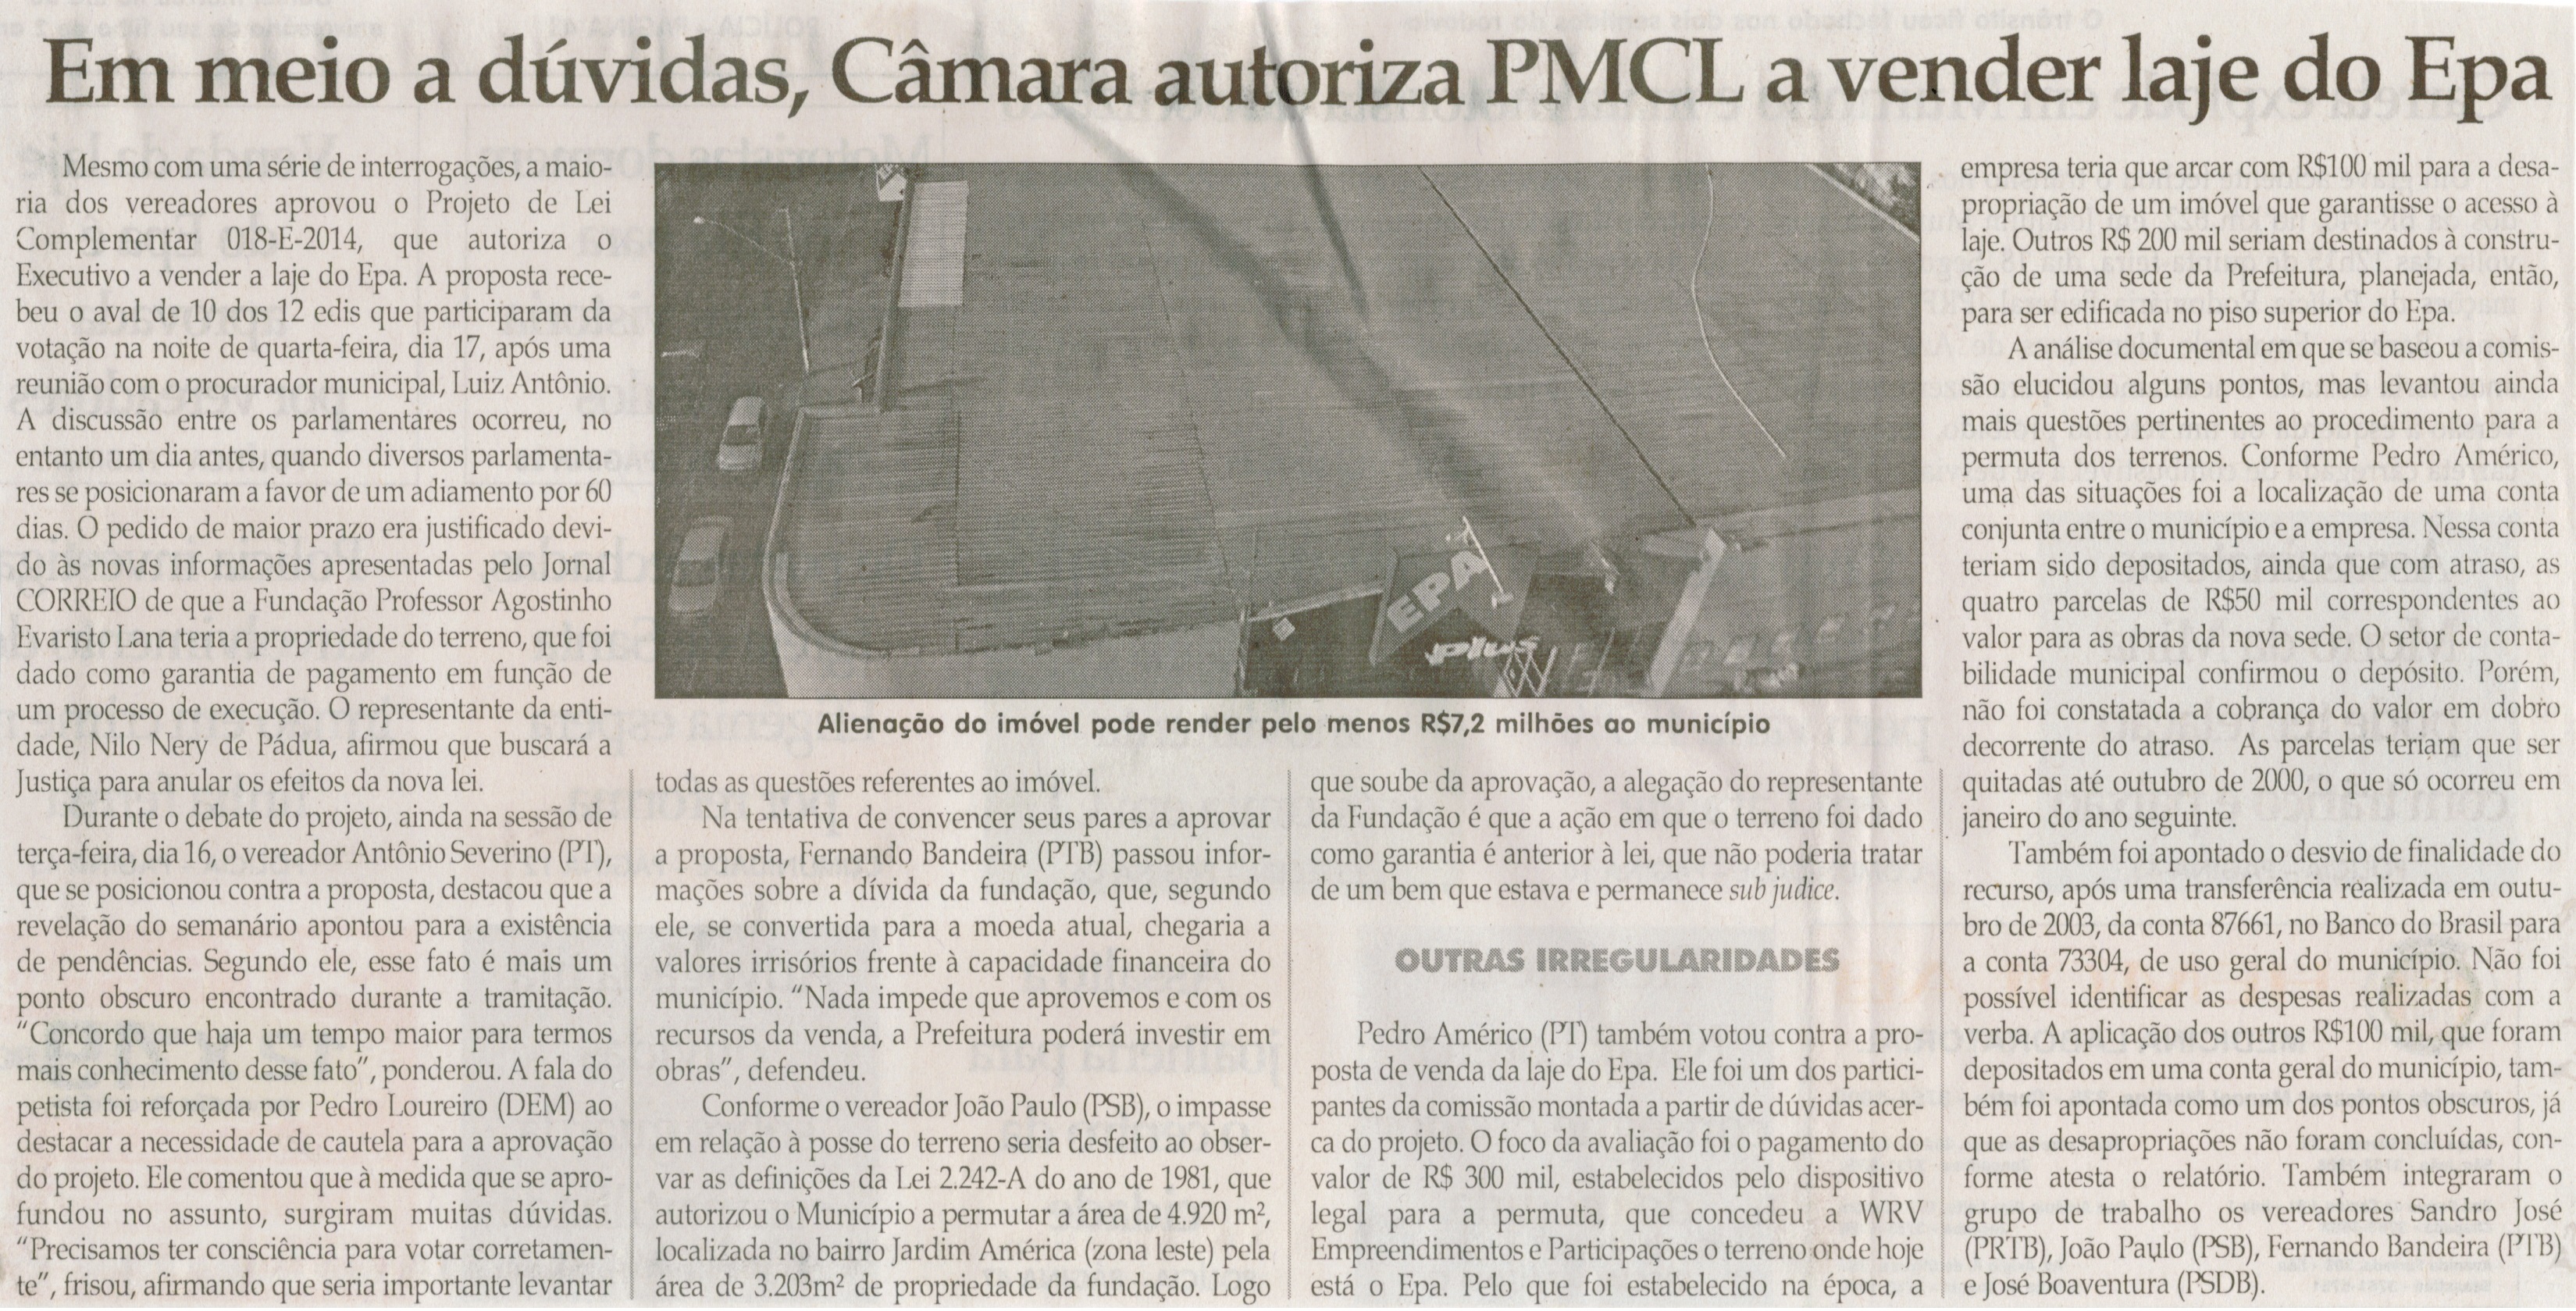 Em meio a dúvidas, Câmara autoriza PMCL a vender laje do Epa. Jornal Correio da Cidade, Conselheiro Lafaiete, 26 dez. 2014, p. 2.